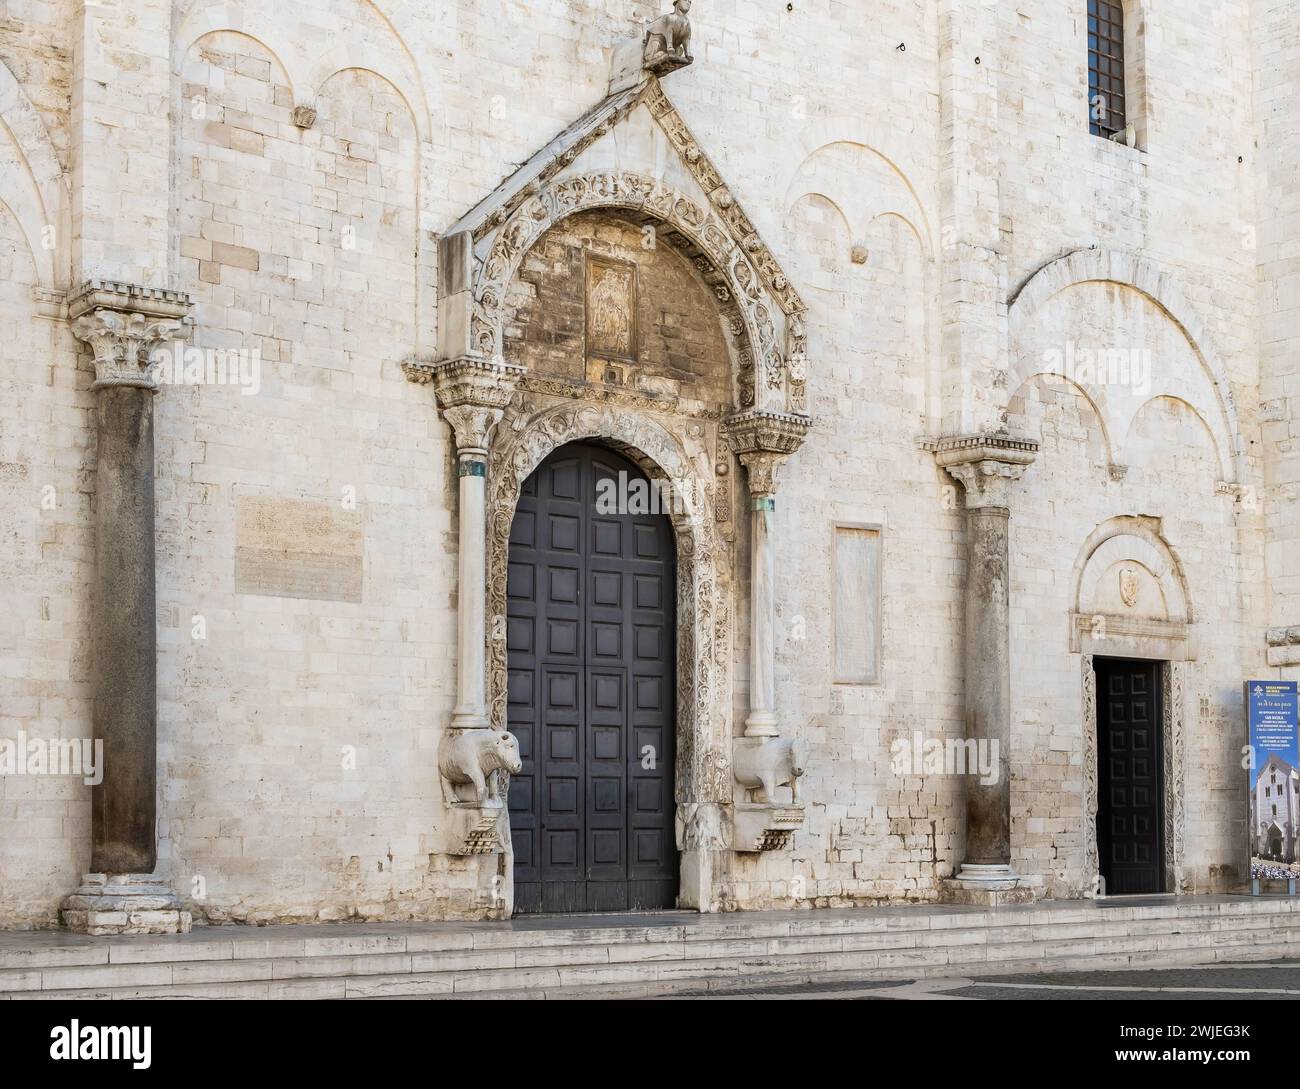 Detalle del portal de la Basílica de San Nicolás en el centro histórico de Bari, región de Puglia (Apulia), Italia, 18 de septiembre de 2022 Foto de stock